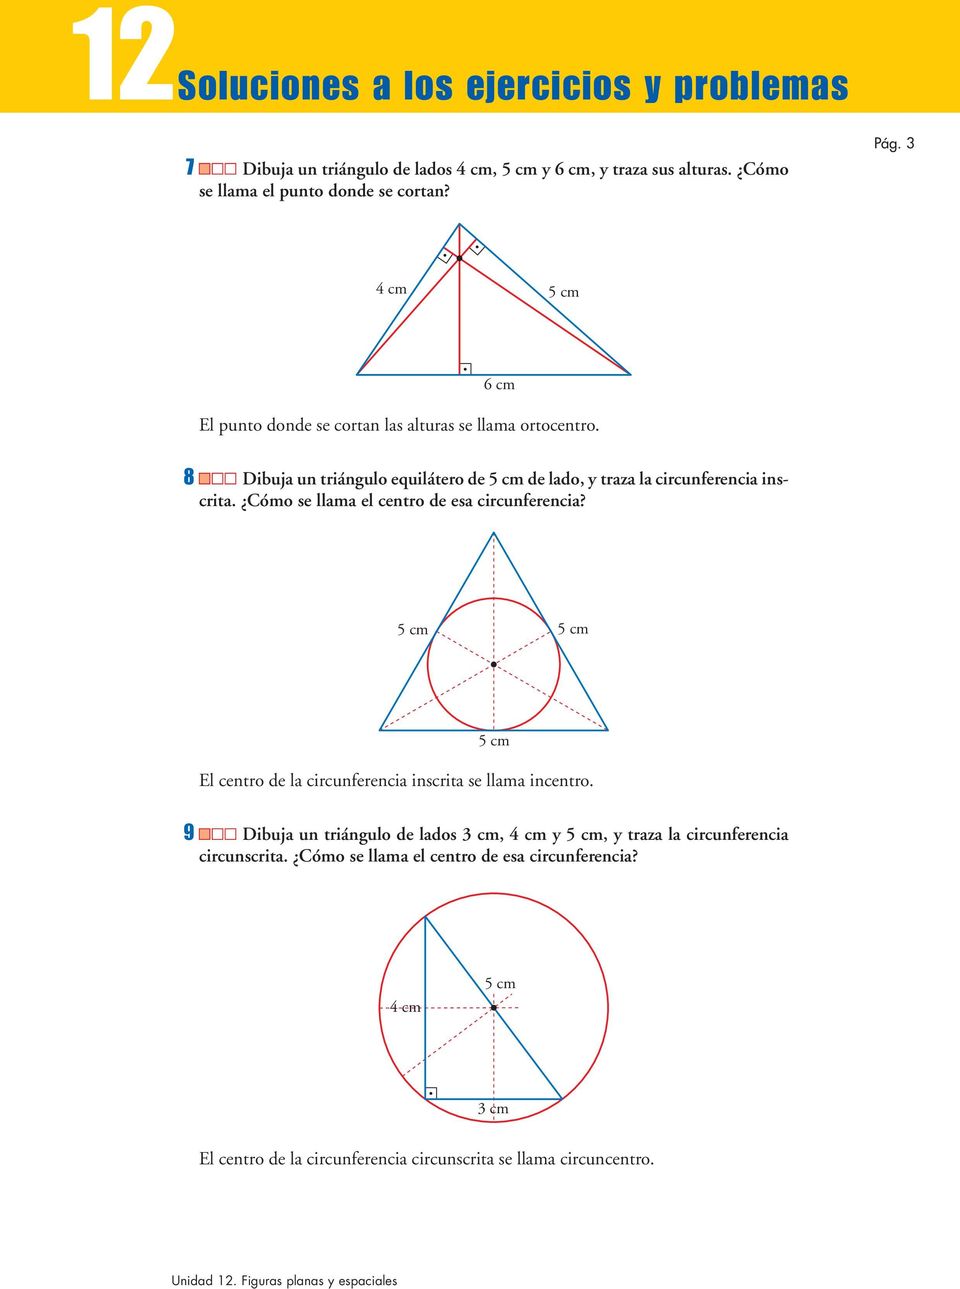 8 Dibuja un triángulo equilátero de 5 cm de lado, y traza la circunferencia inscrita. Cómo se llama el centro de esa circunferencia?